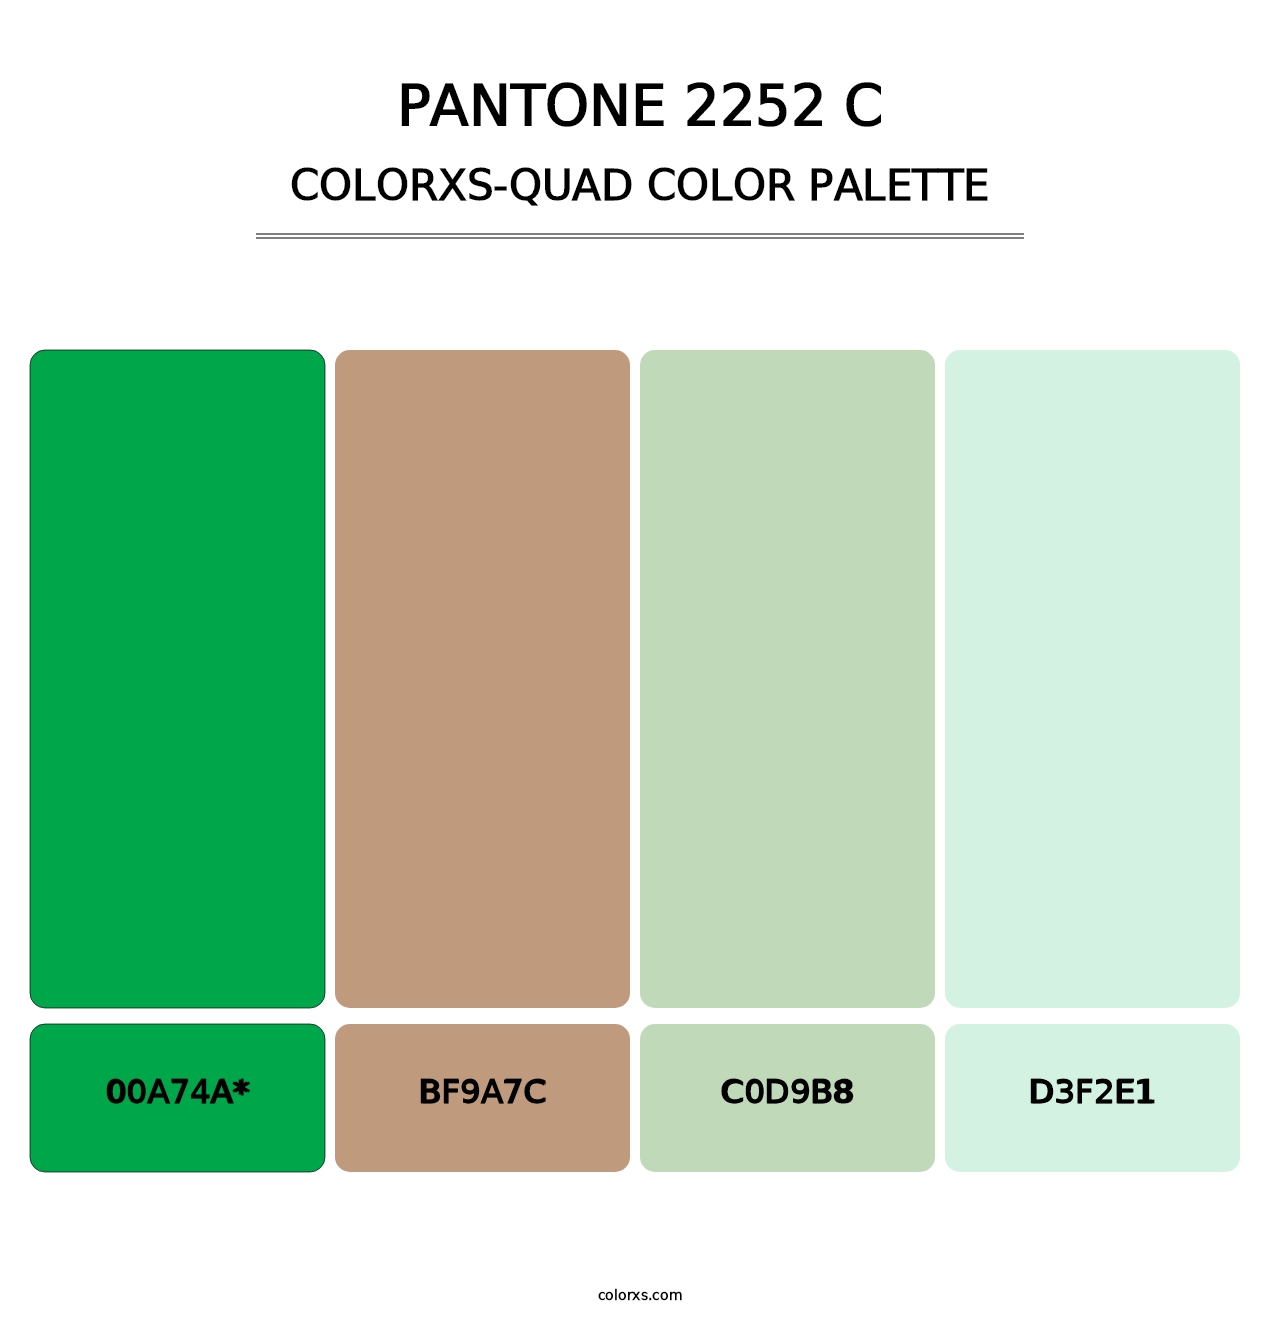 PANTONE 2252 C - Colorxs Quad Palette